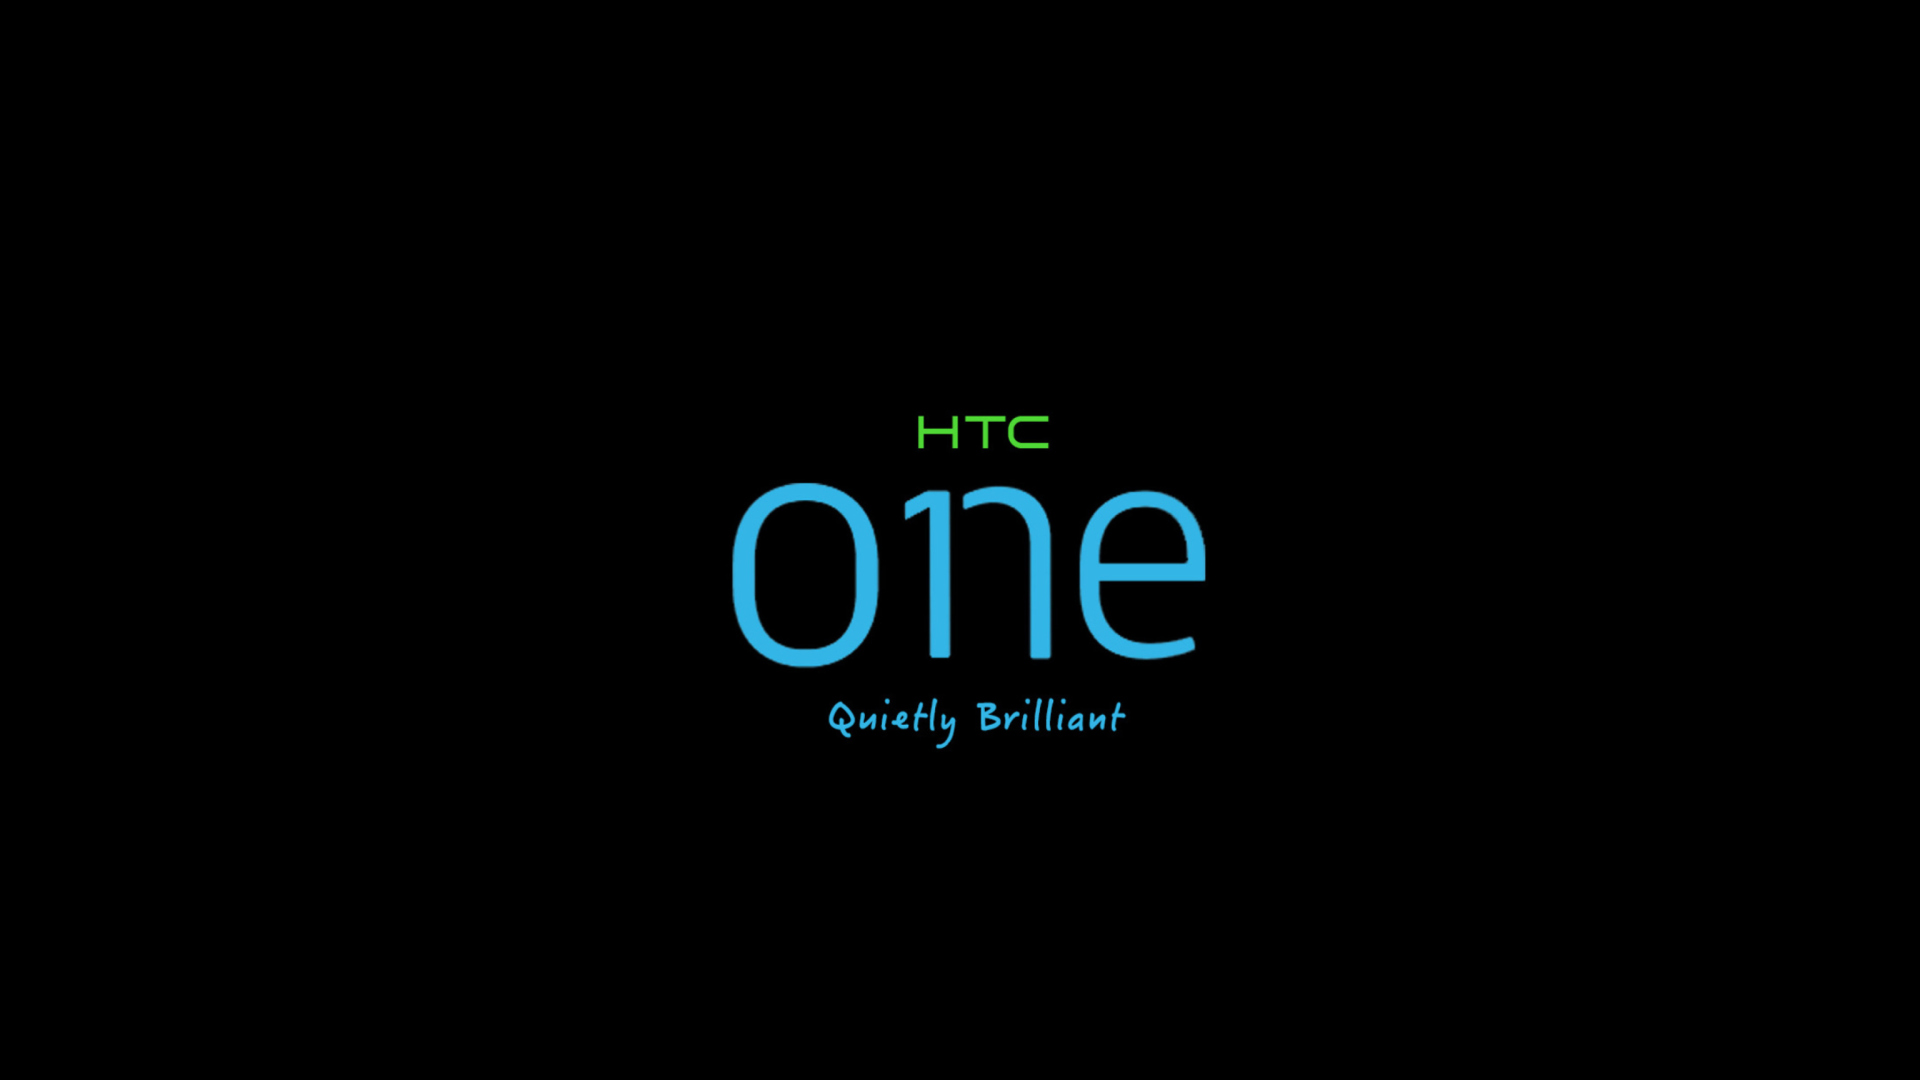 Das HTC One Holo Sense 6 Wallpaper 1920x1080